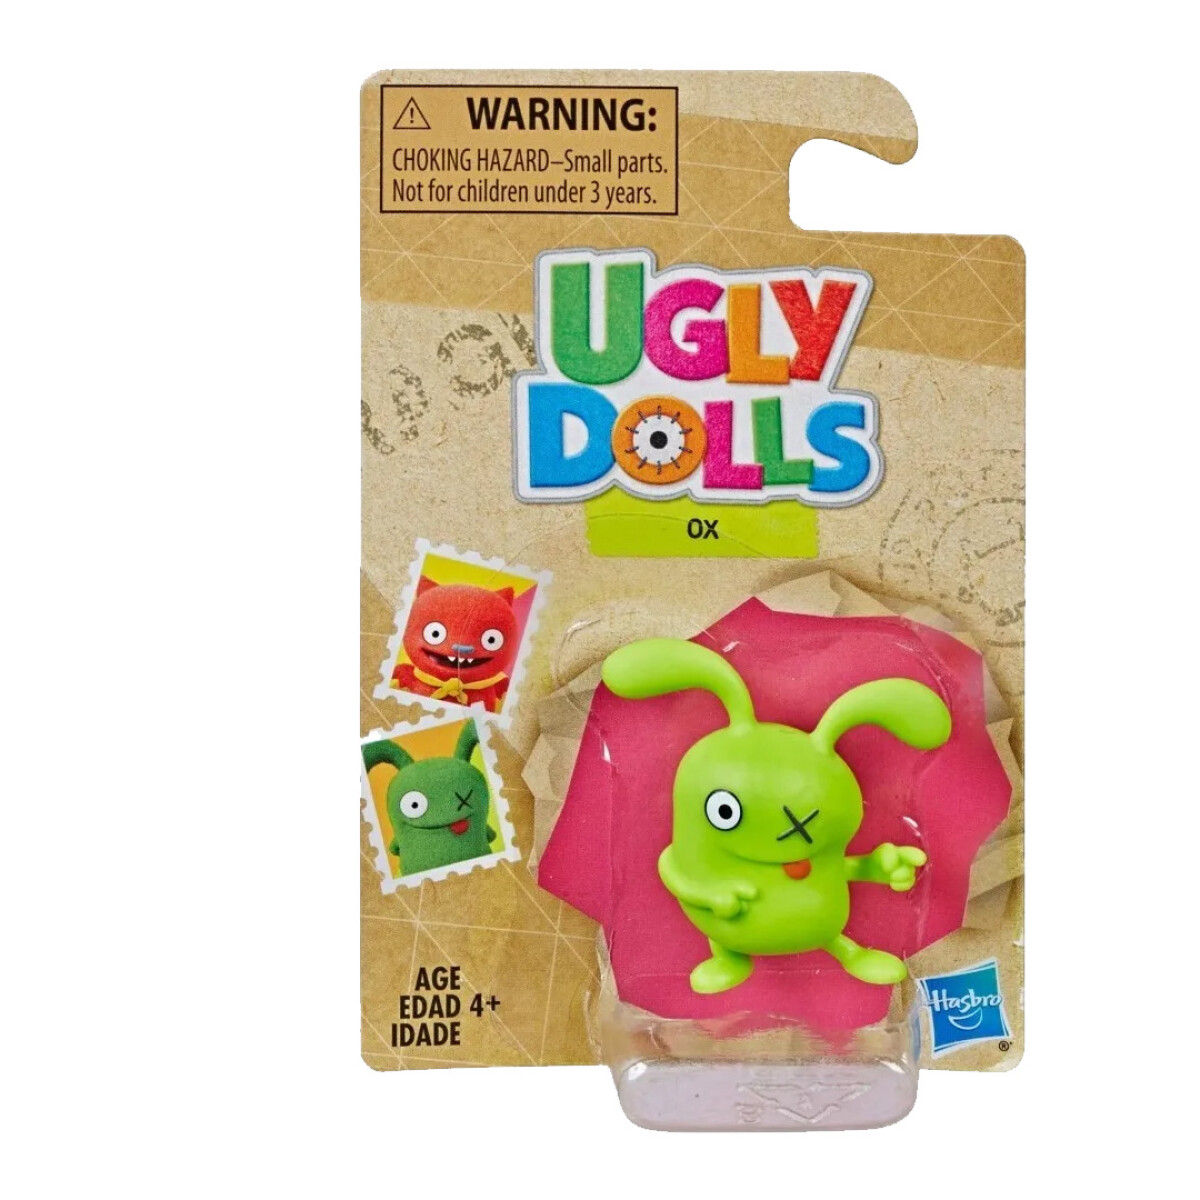 Mini Figura Ugly Dolls Ox Hasbro E5655 - 001 